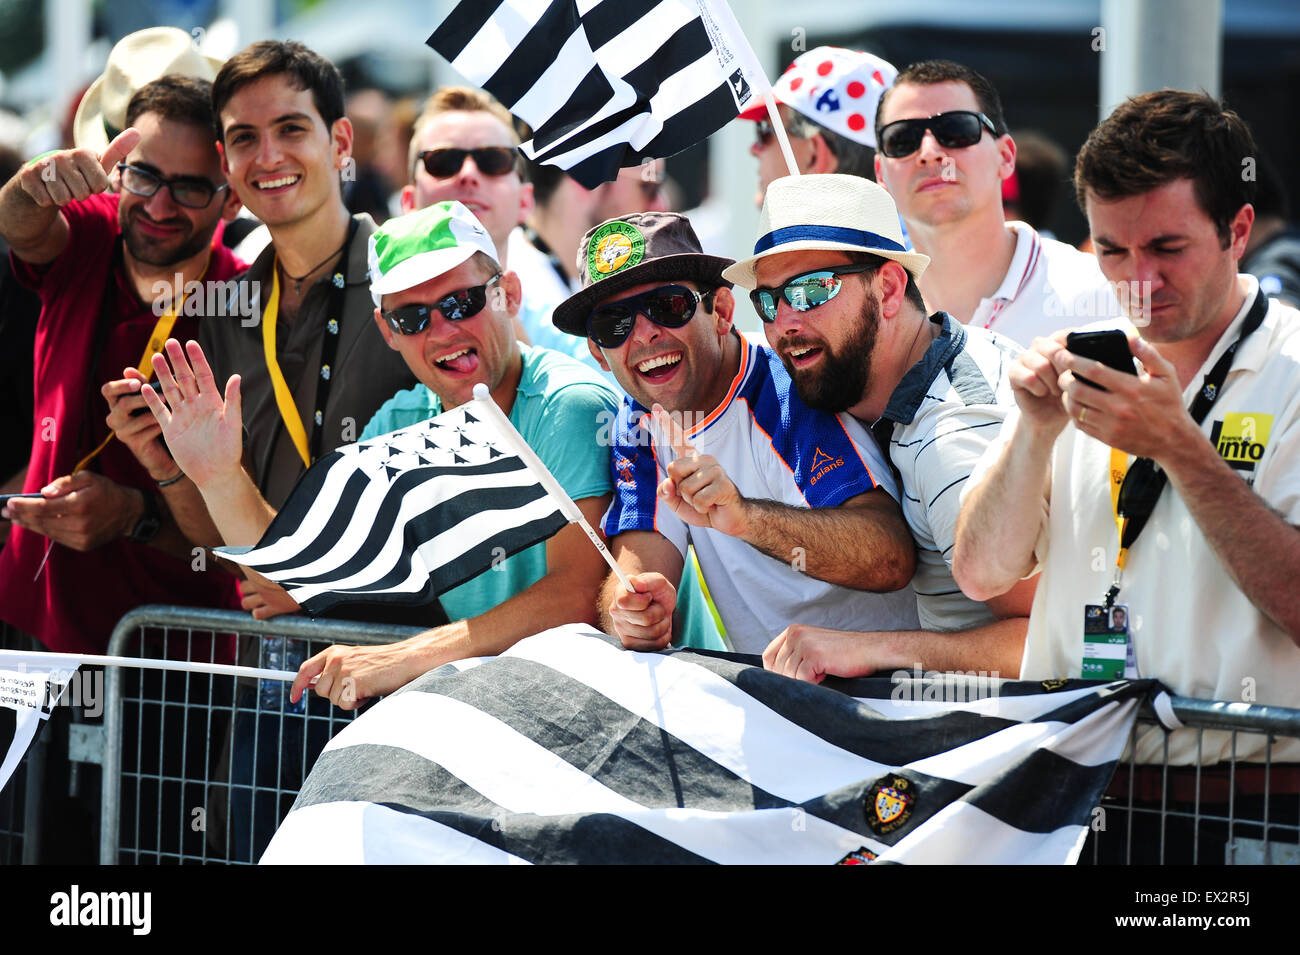 Utrecht, Niederlande. 4. Juli 2015. Radsport-Fans während der Phase 1 der Tour de France in Utrecht, Niederlande. Foto: Miroslav Dakov / Alamy Live News Stockfoto